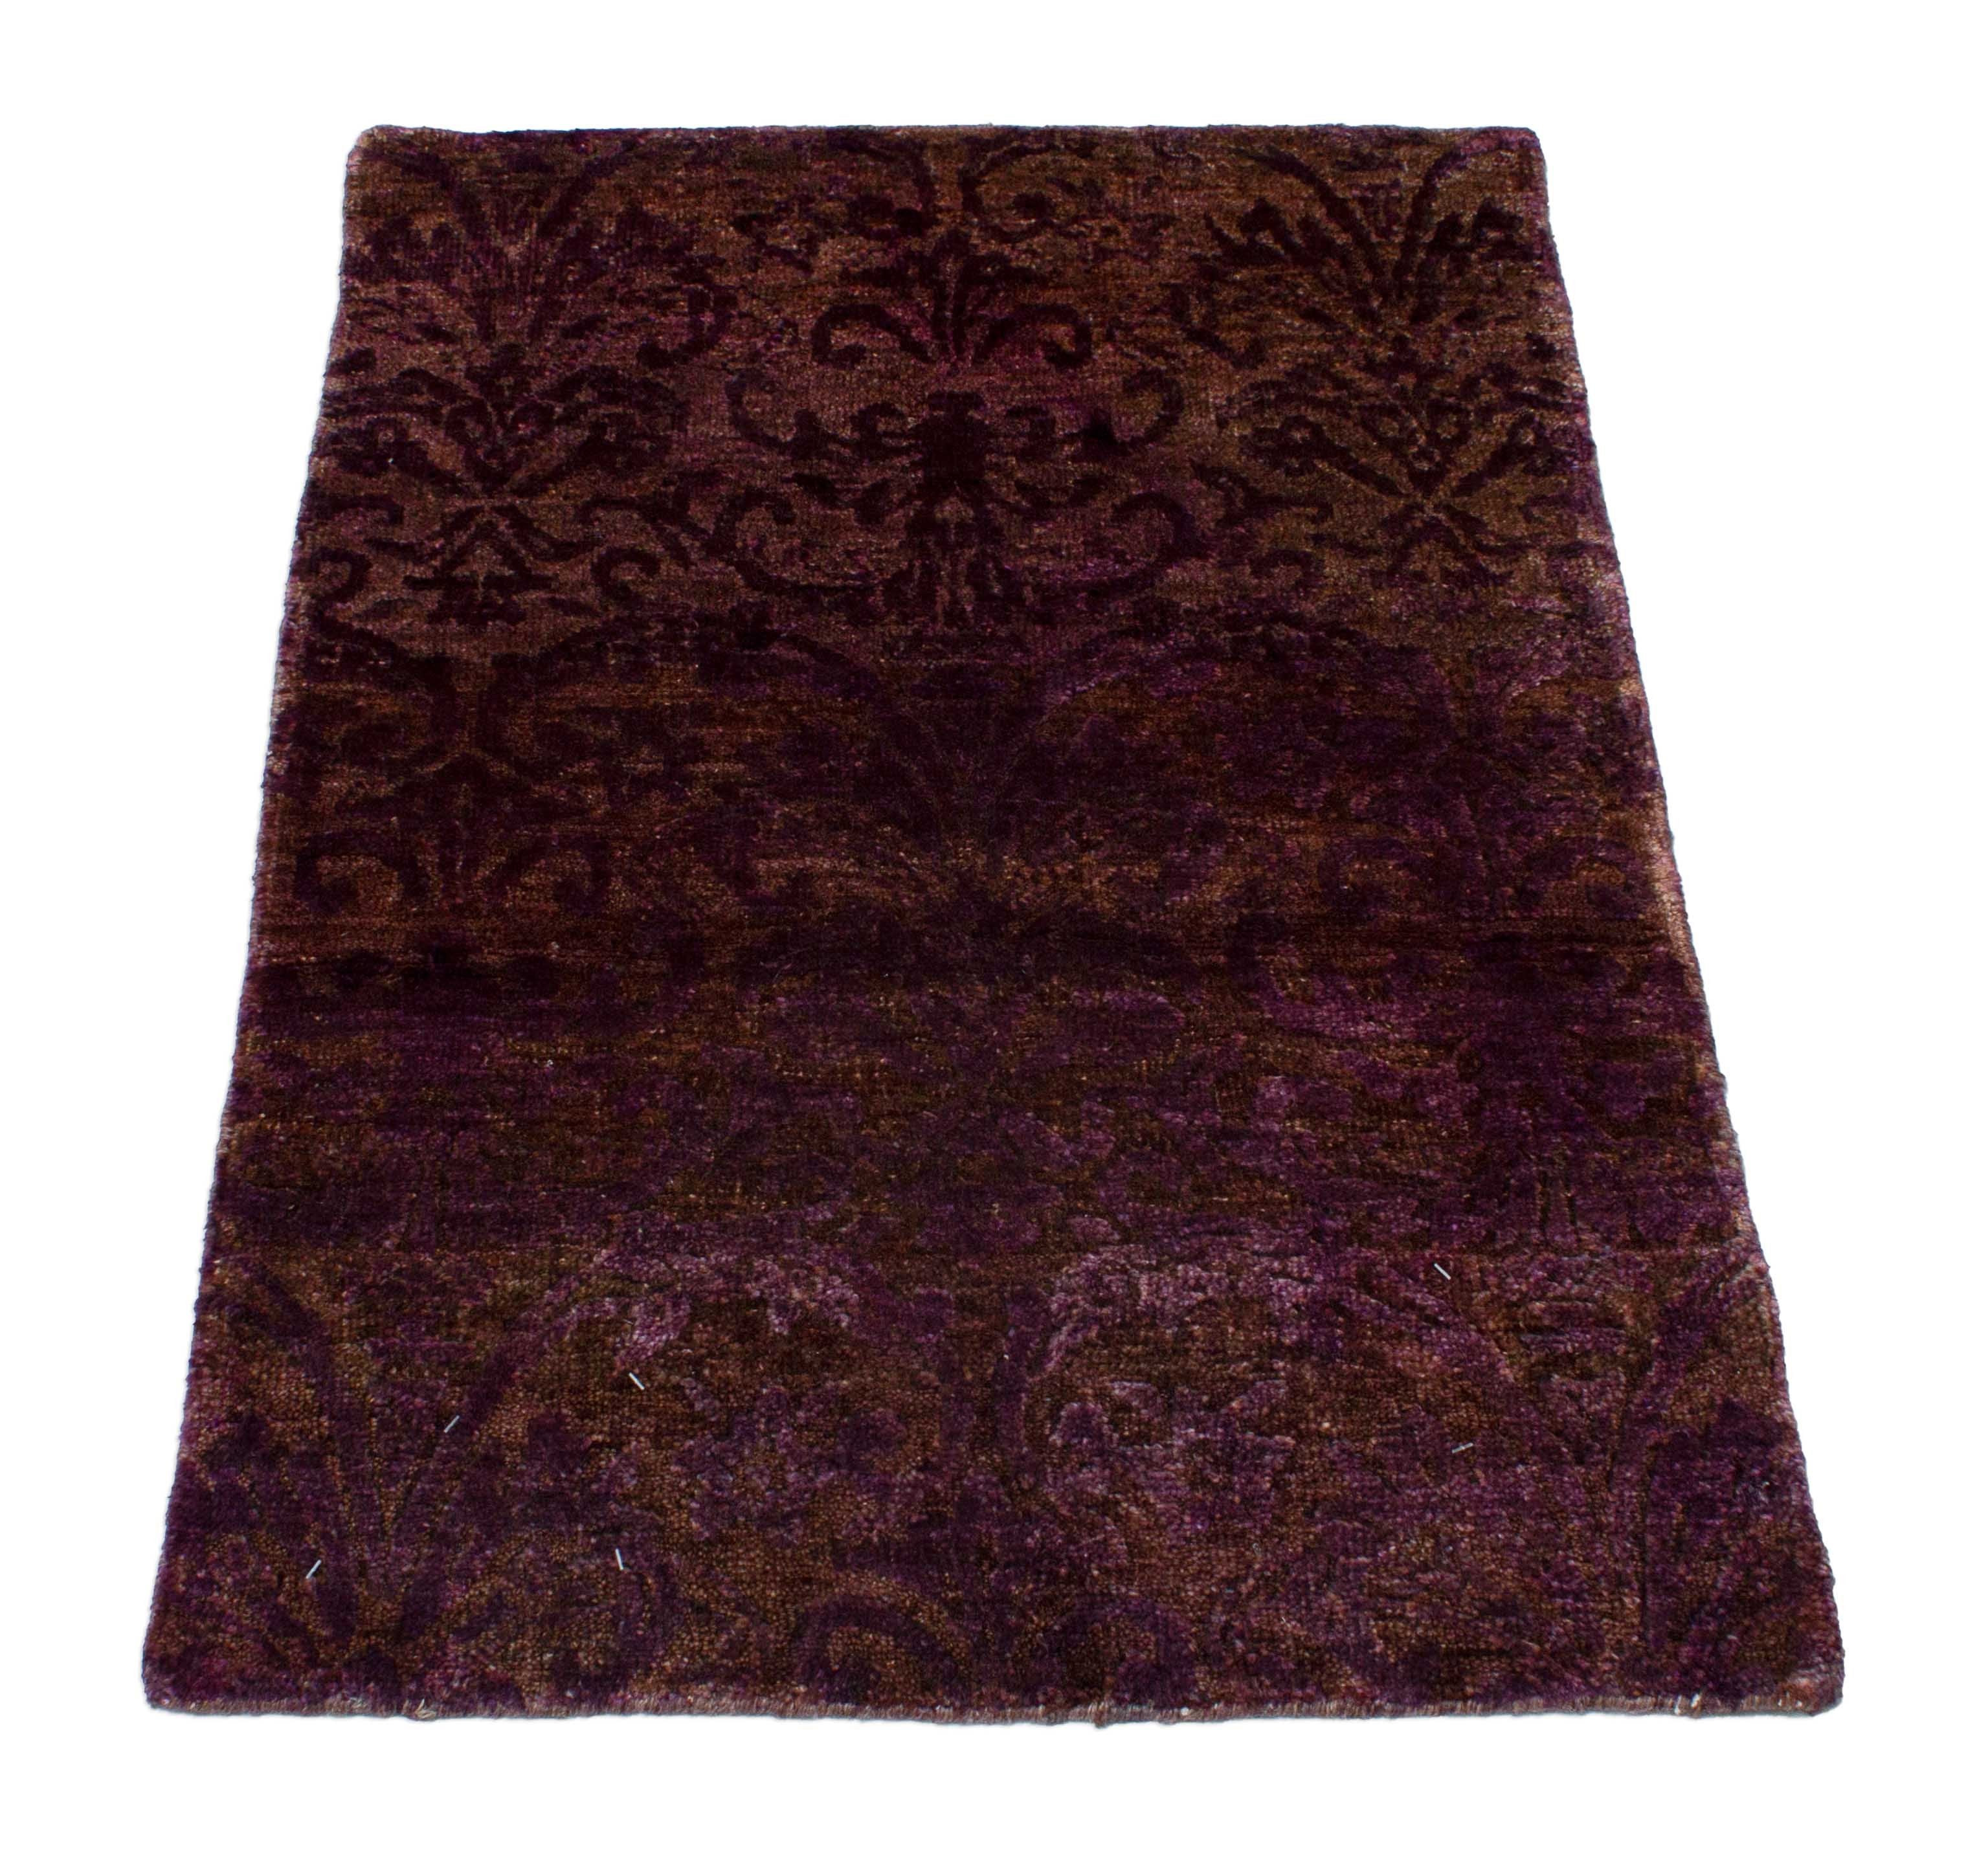 Eine Fotoaufnahme eines Tapis Teppichs.